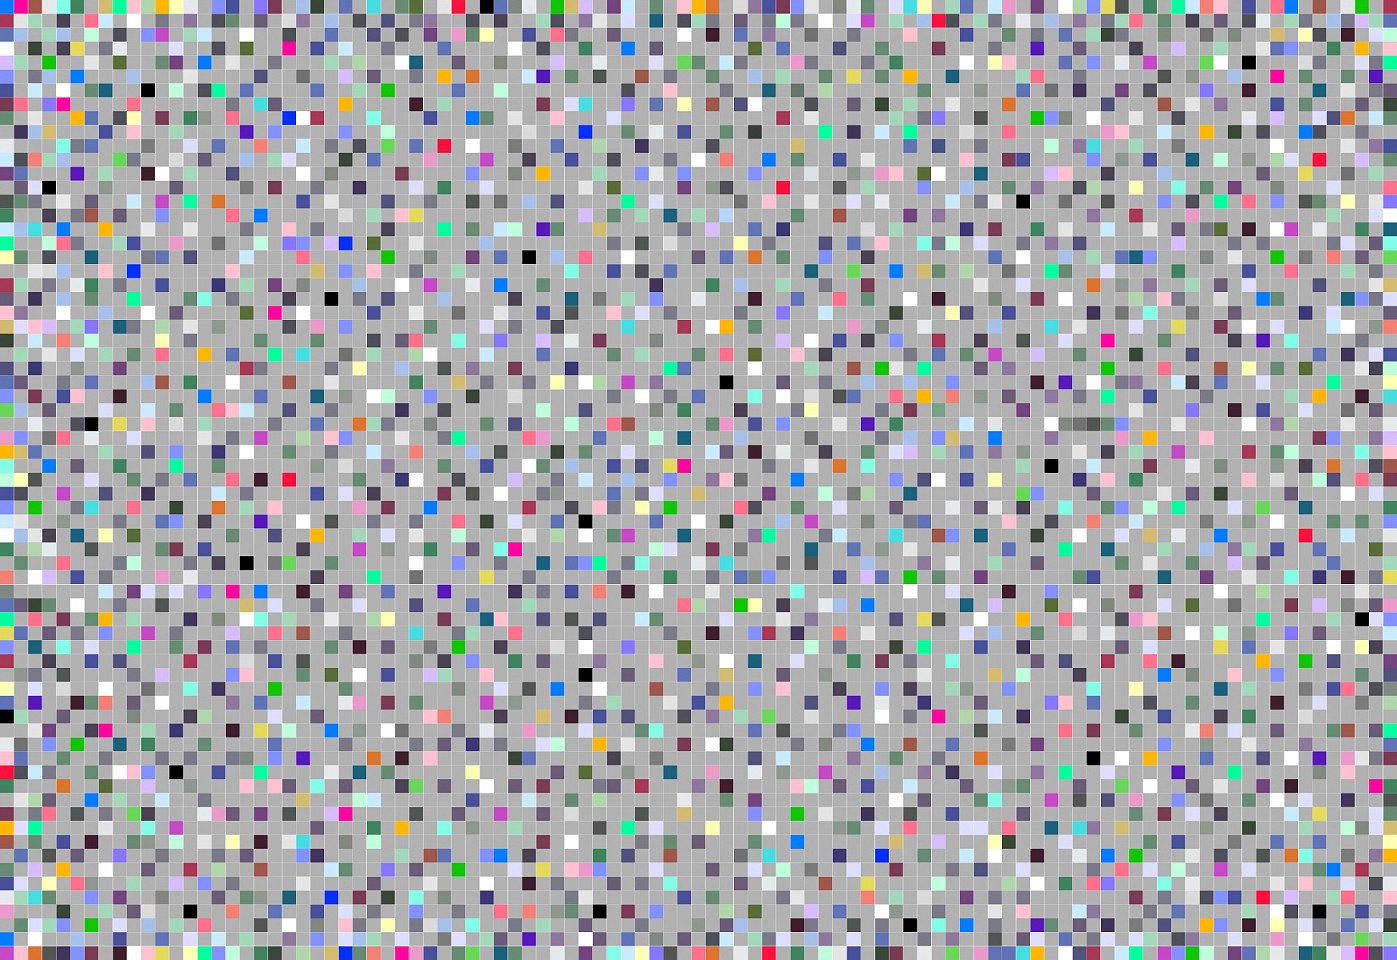 Dane Albert, Color Blocks #37, 2023
Acrylic on canvas (Concept), 48 x 60 in. (121.9 x 152.4 cm)
Series of colored blocks in multiple configurations
DA.cb-2023-037